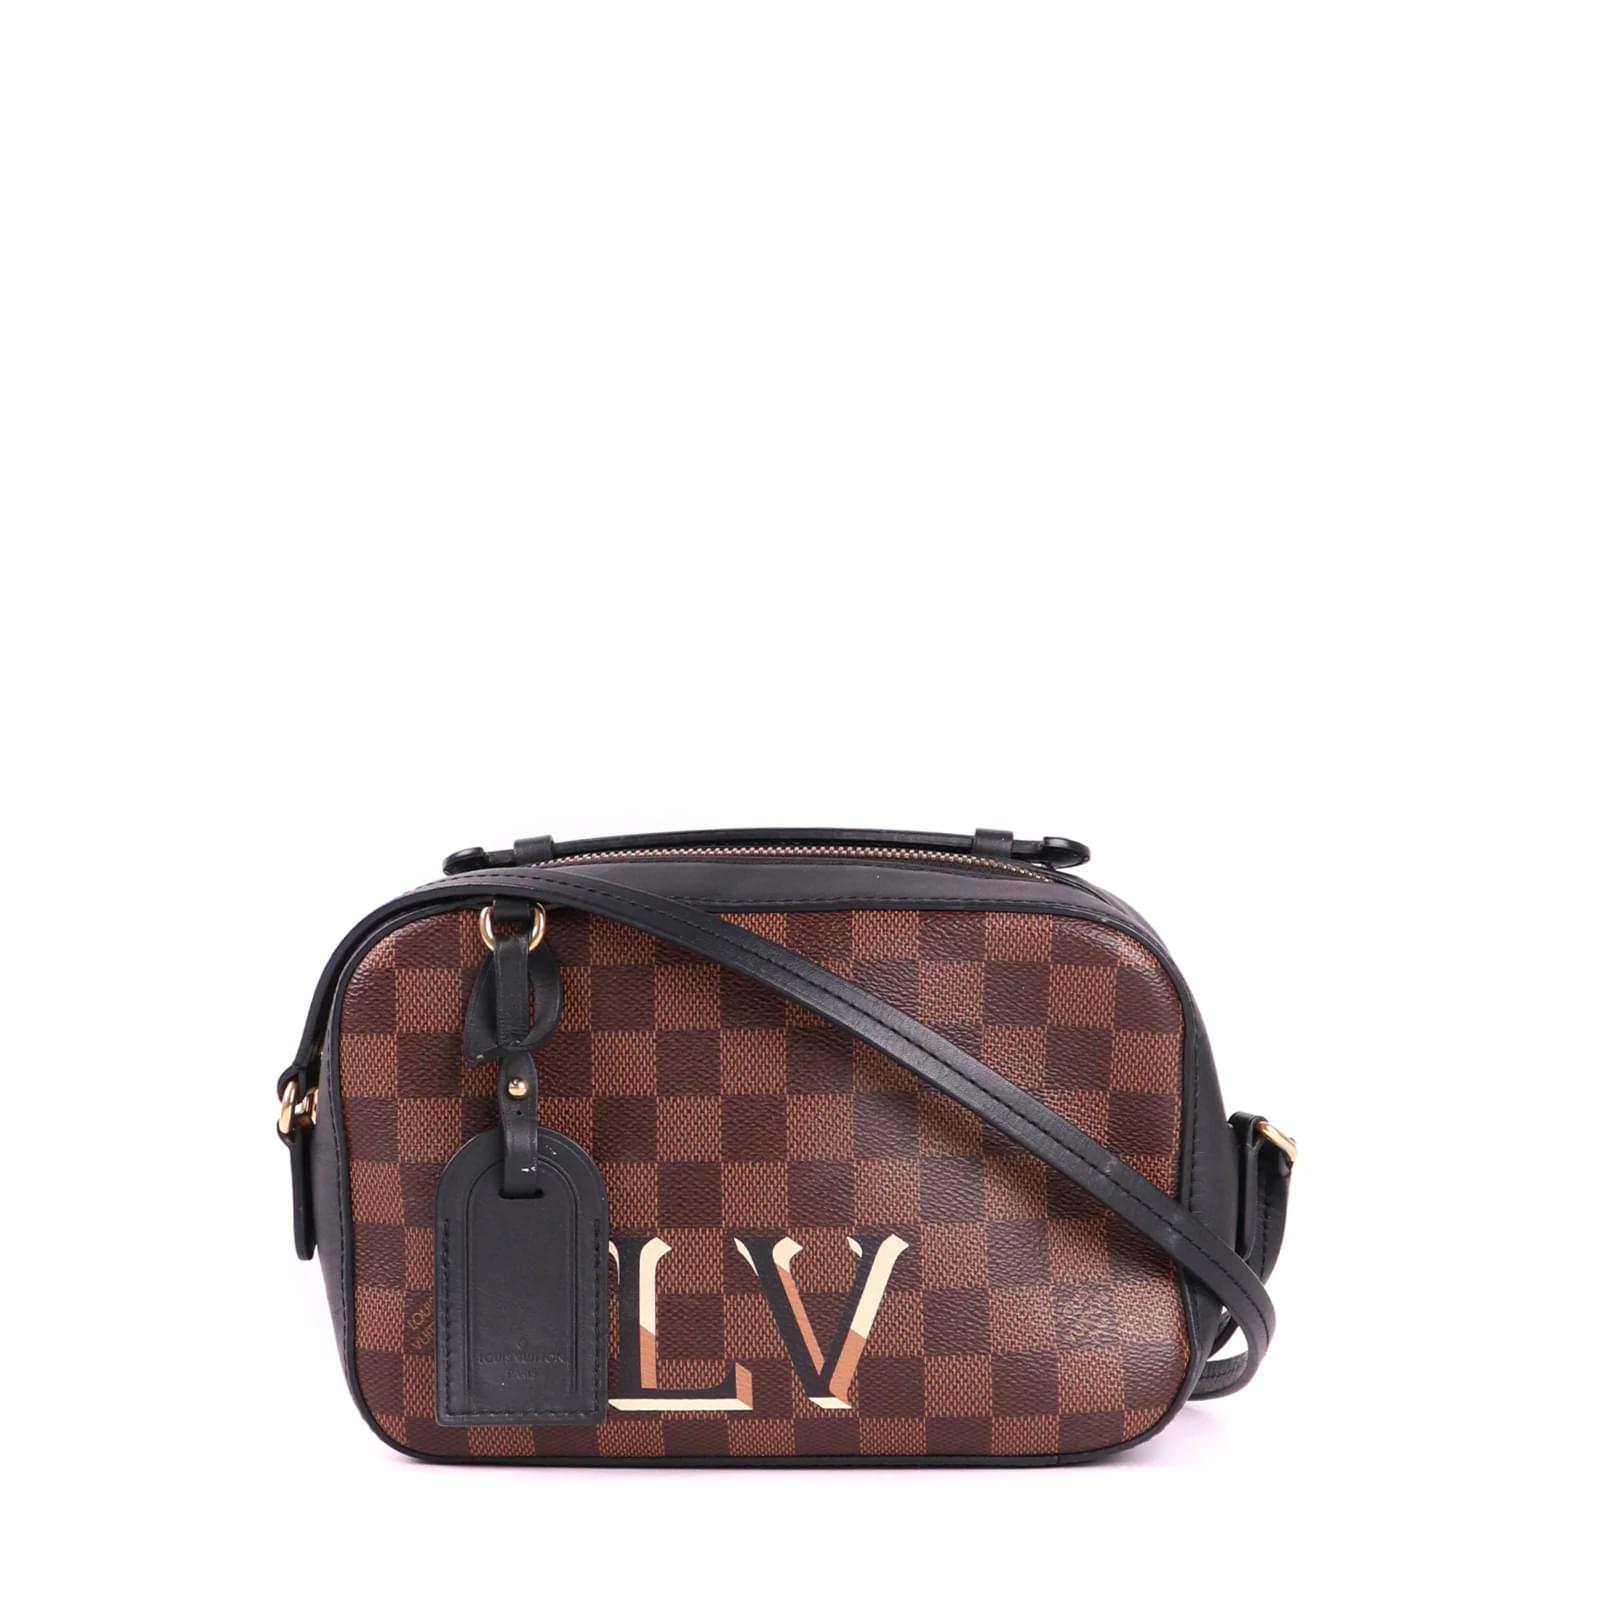 Louis Vuitton Bag 05 3D model